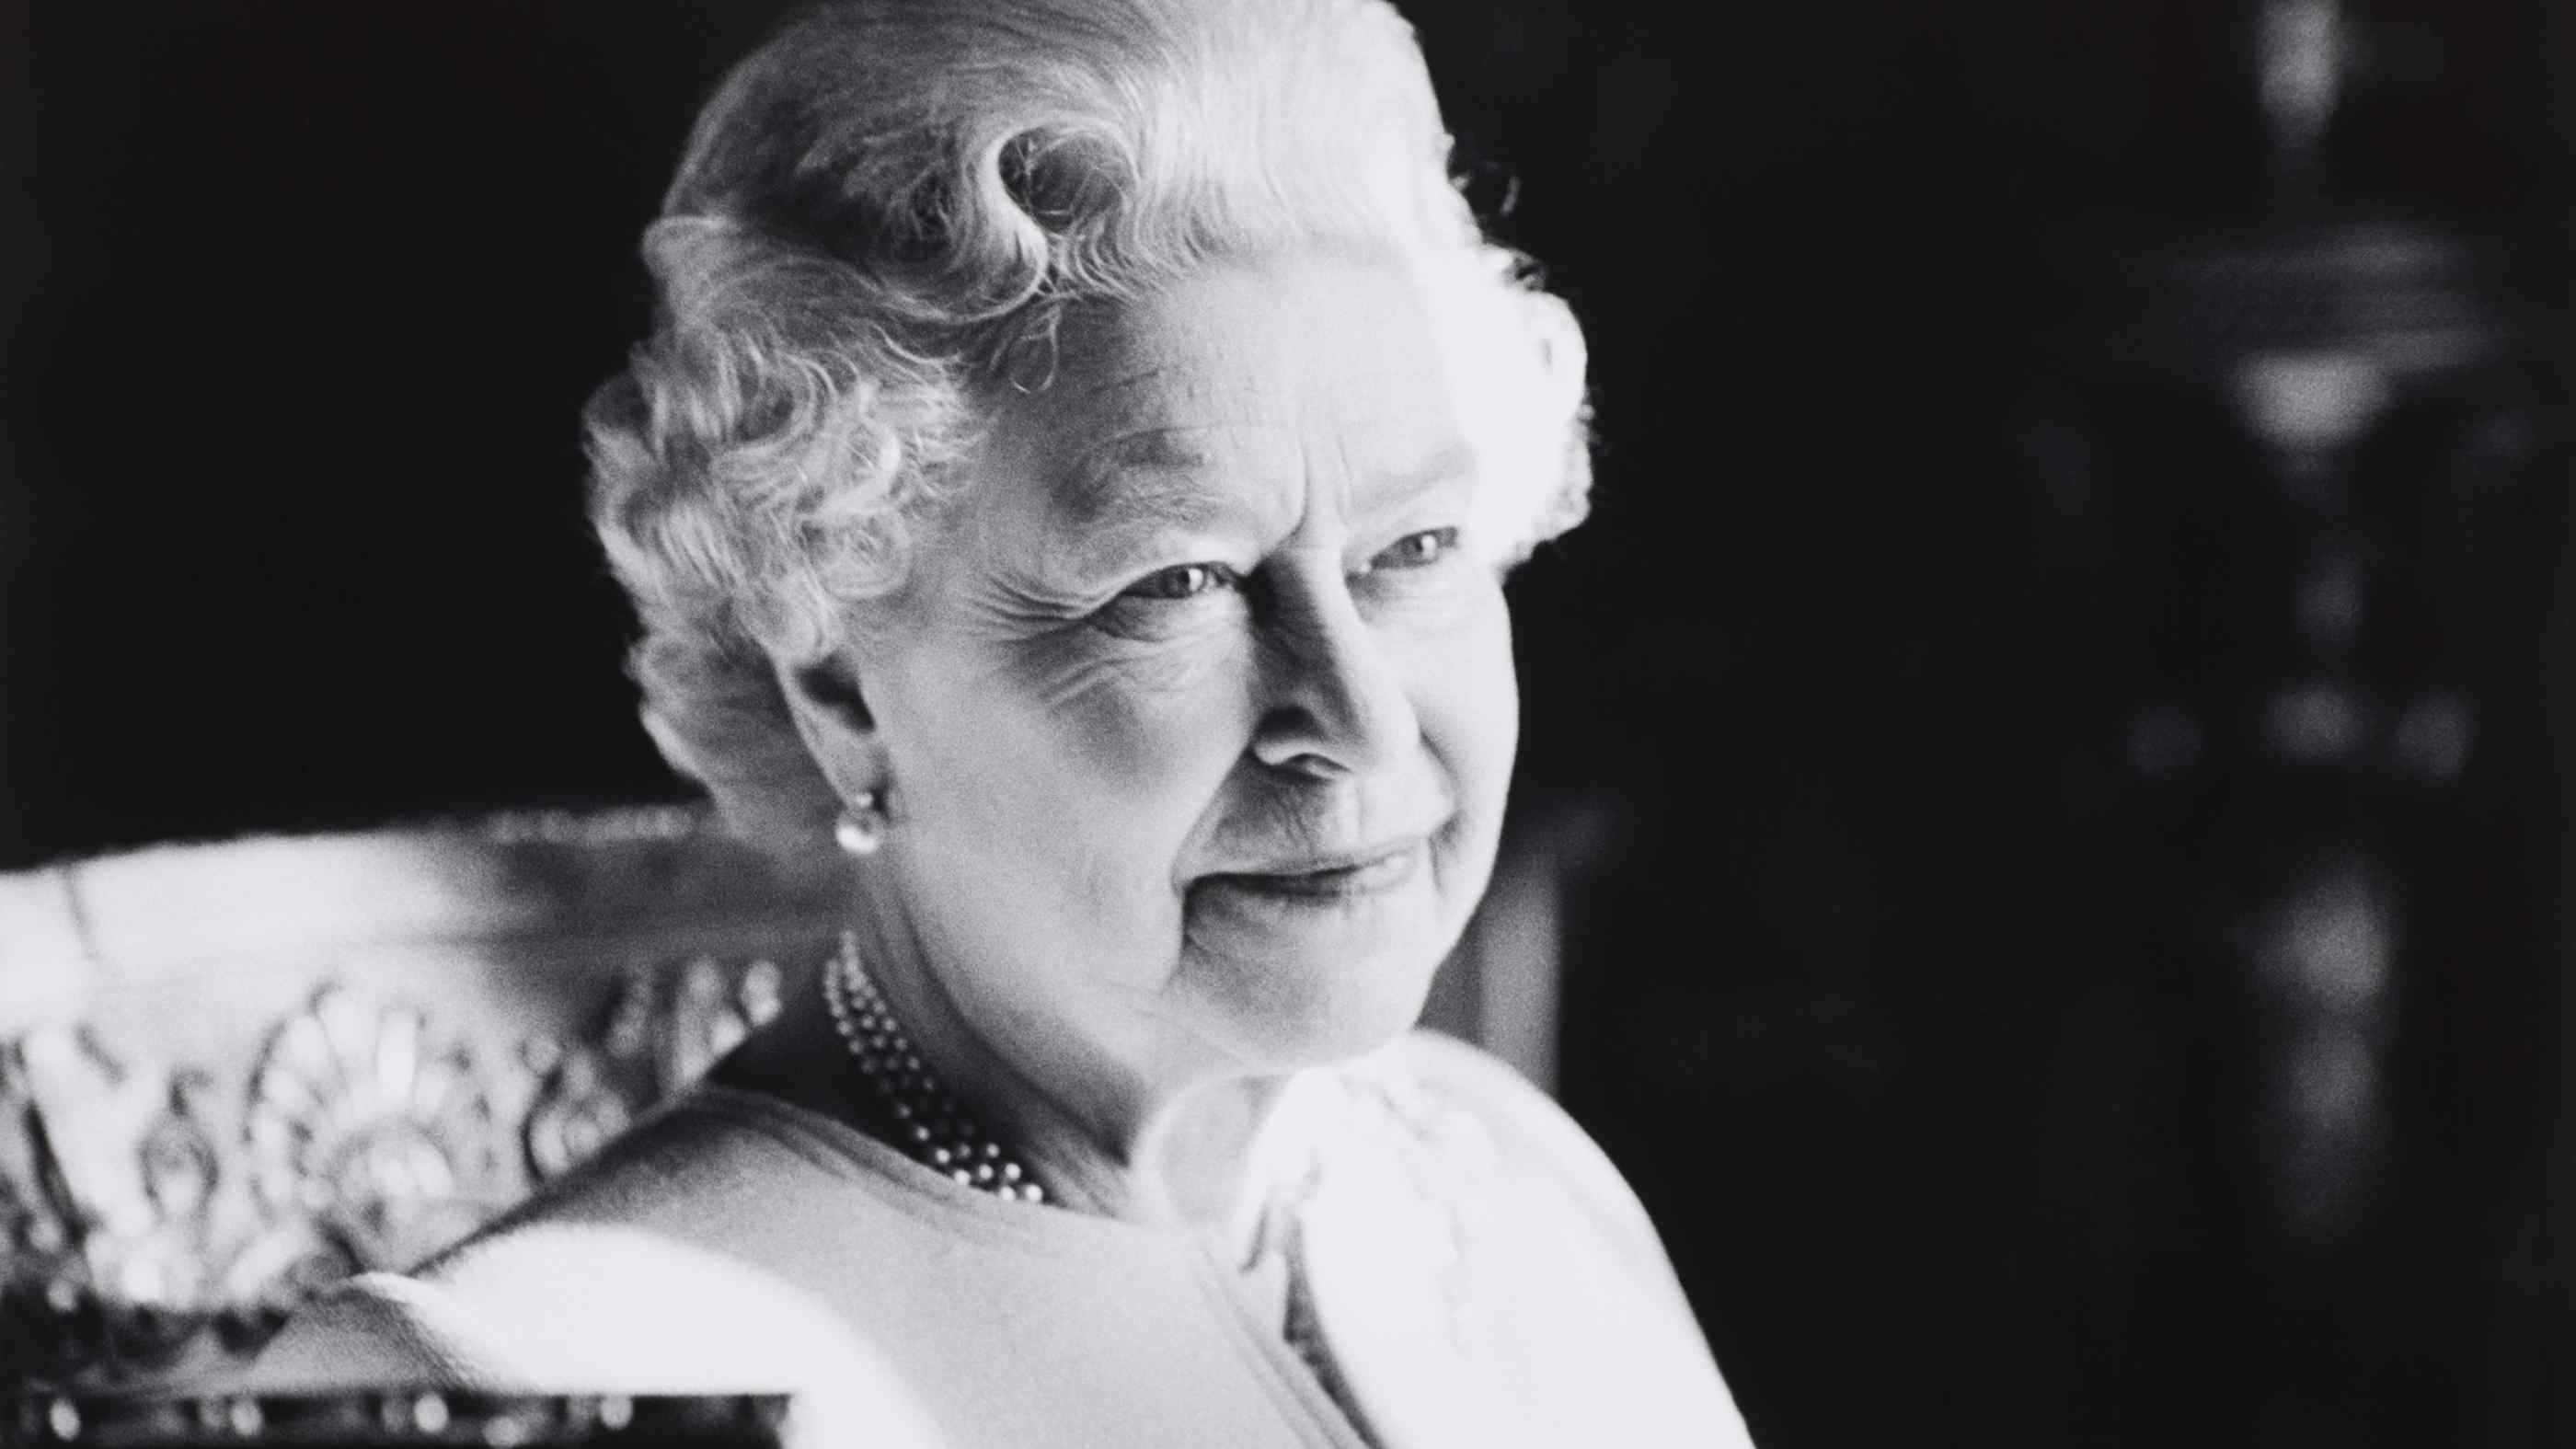 Queen Elizabeth II 1926 – 2022